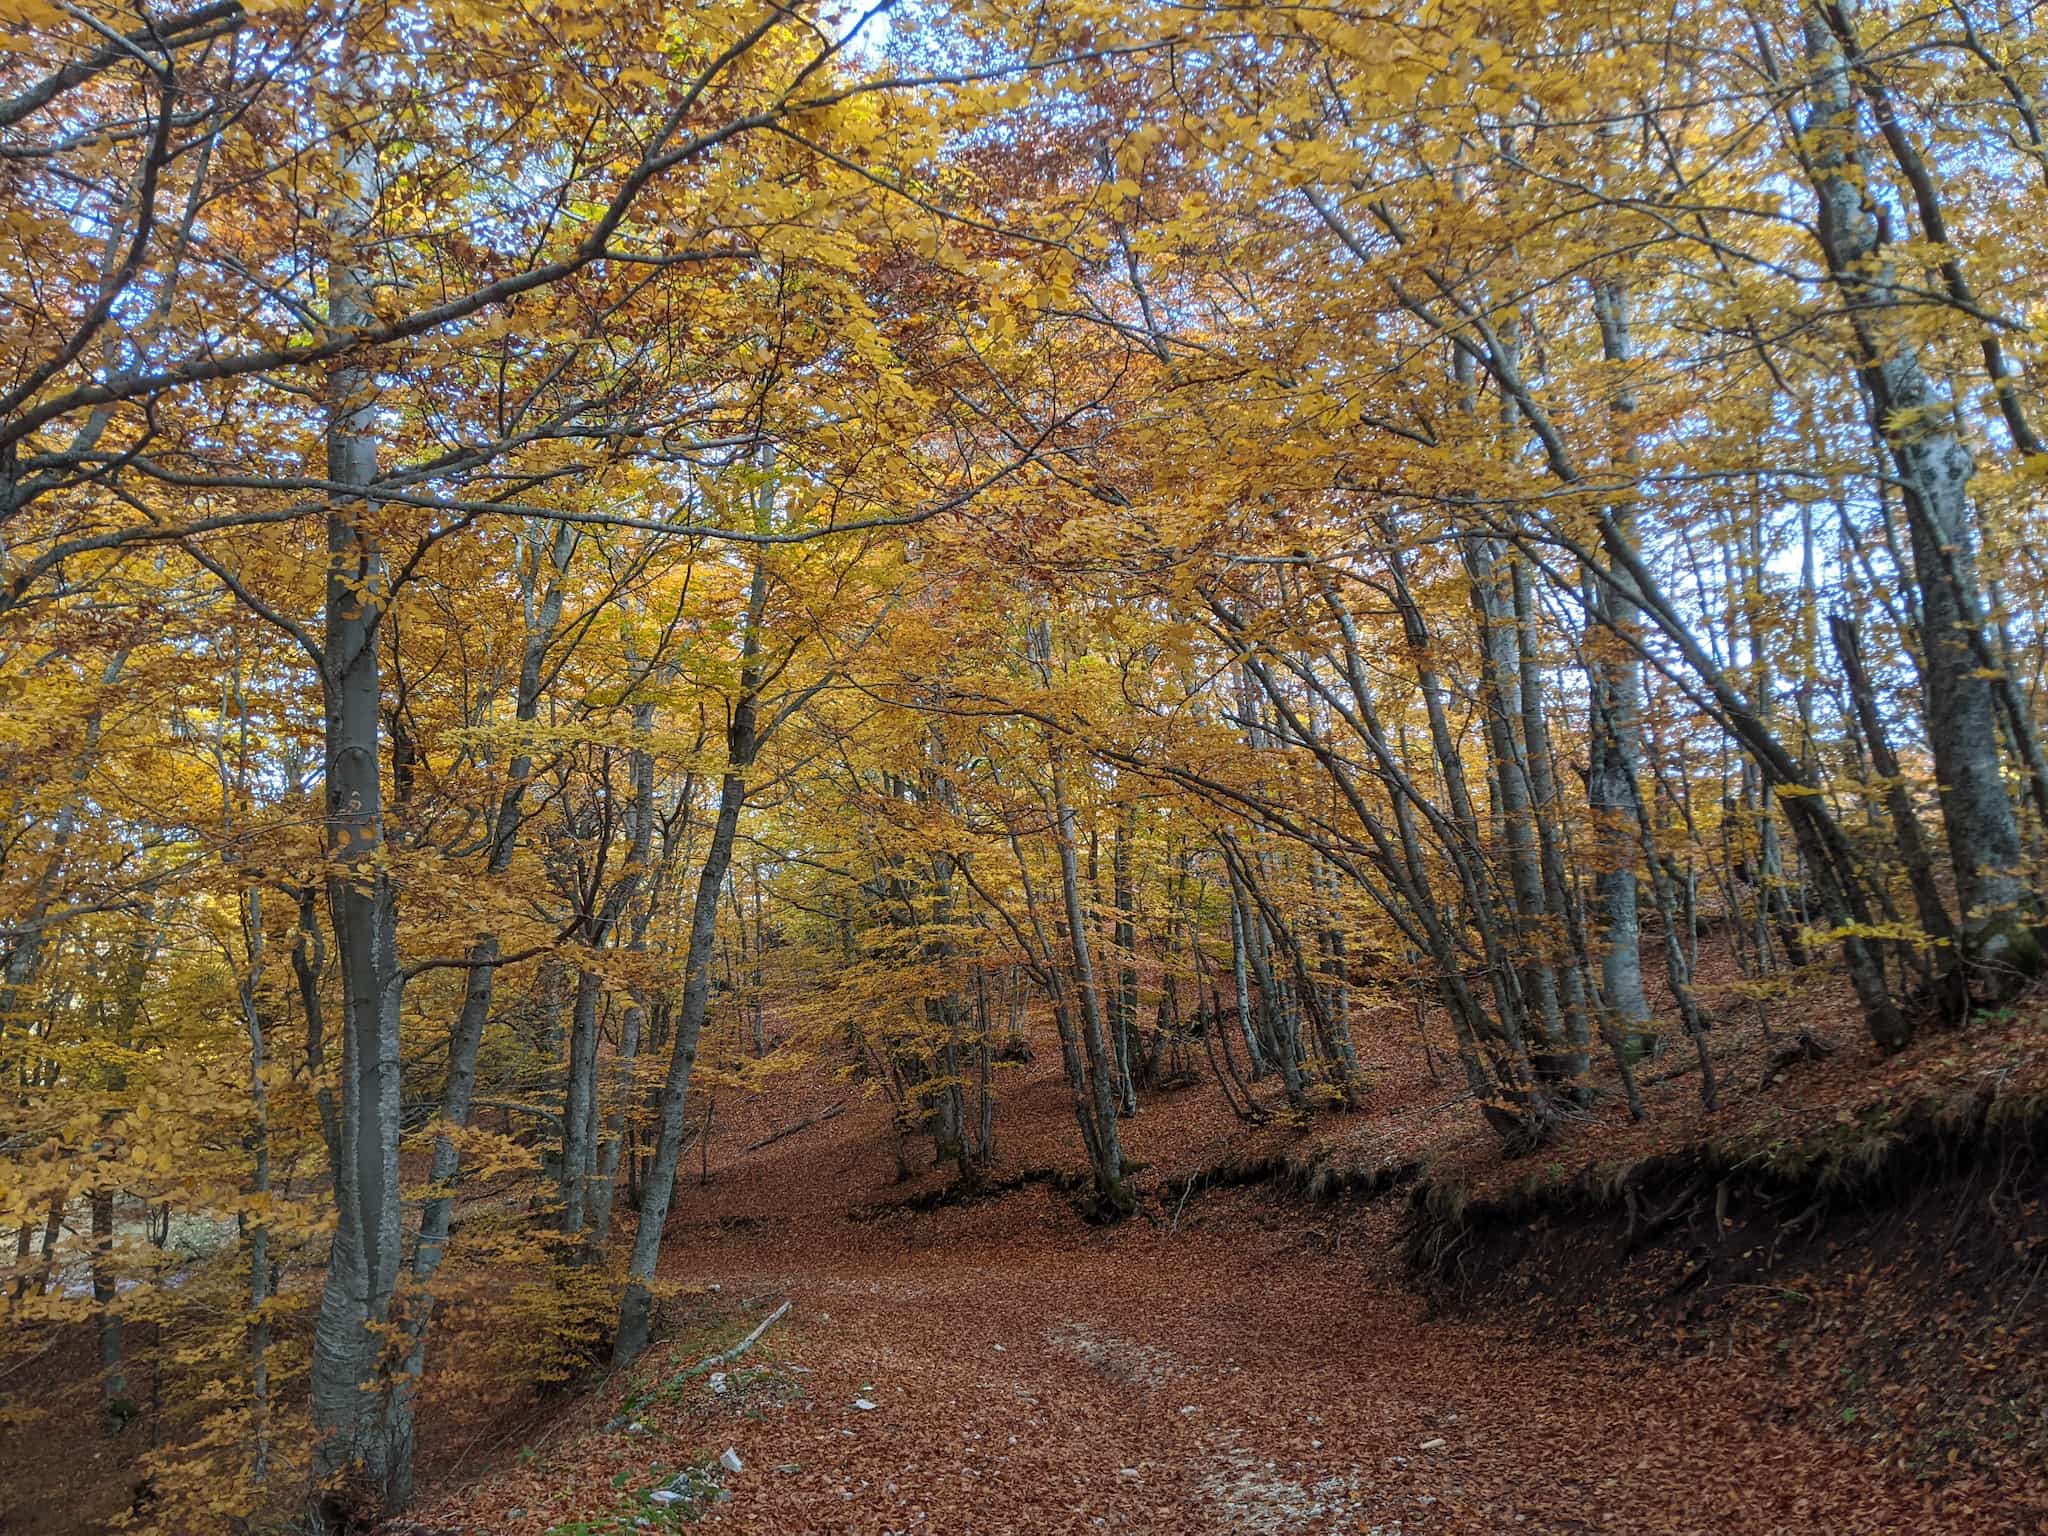 foliage Esperienza fotografica nei boschi tra i magici colori autunnali